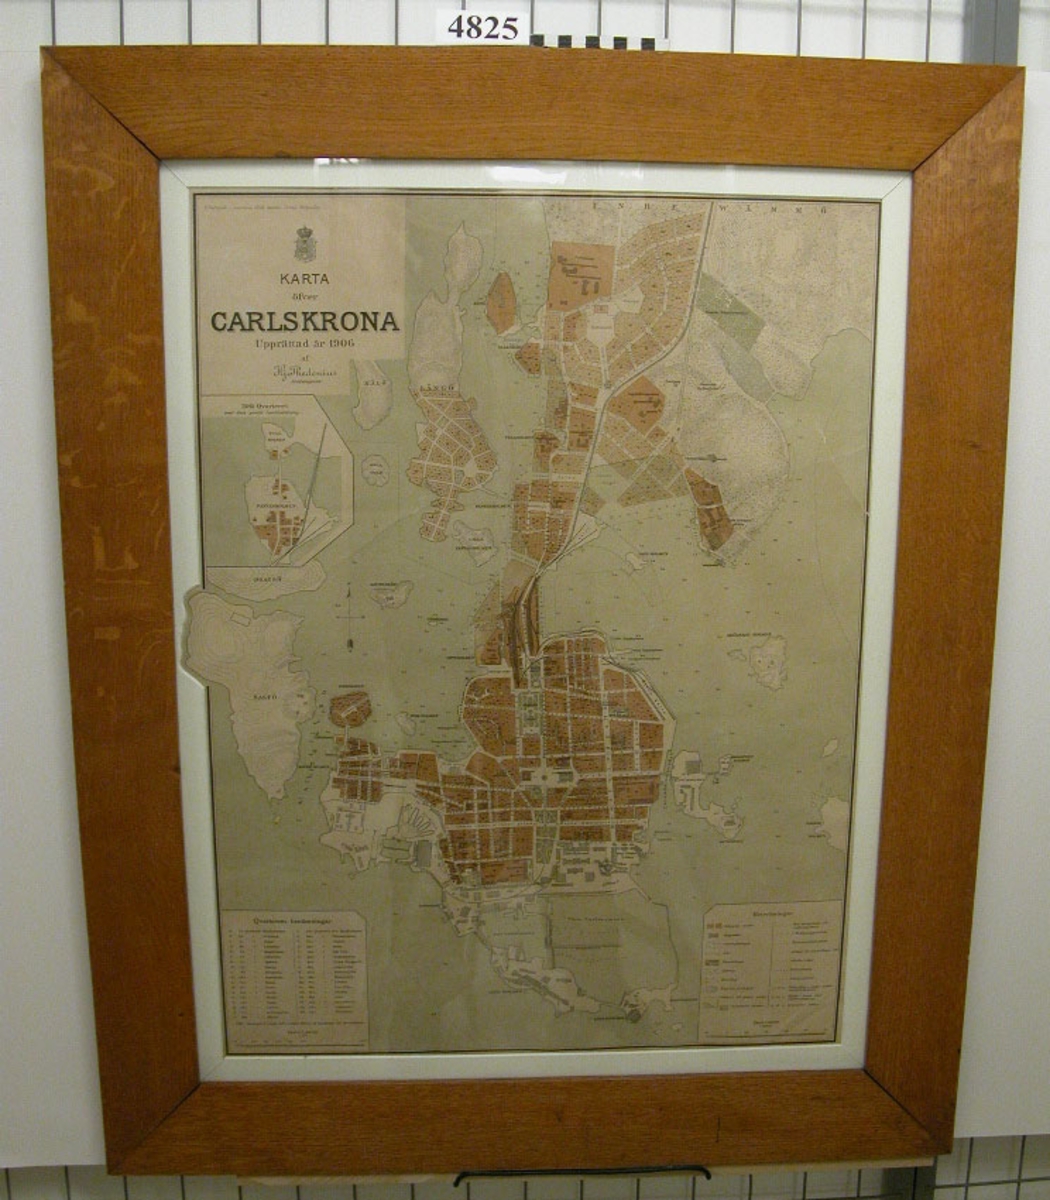 Karta över Karlskrona, skala 1:6000, upprättad år 1906 av stadsingenjör
Hj. Thedenius.
Den är på papp i färgtryck inom glas och ram av trä, förnissad.